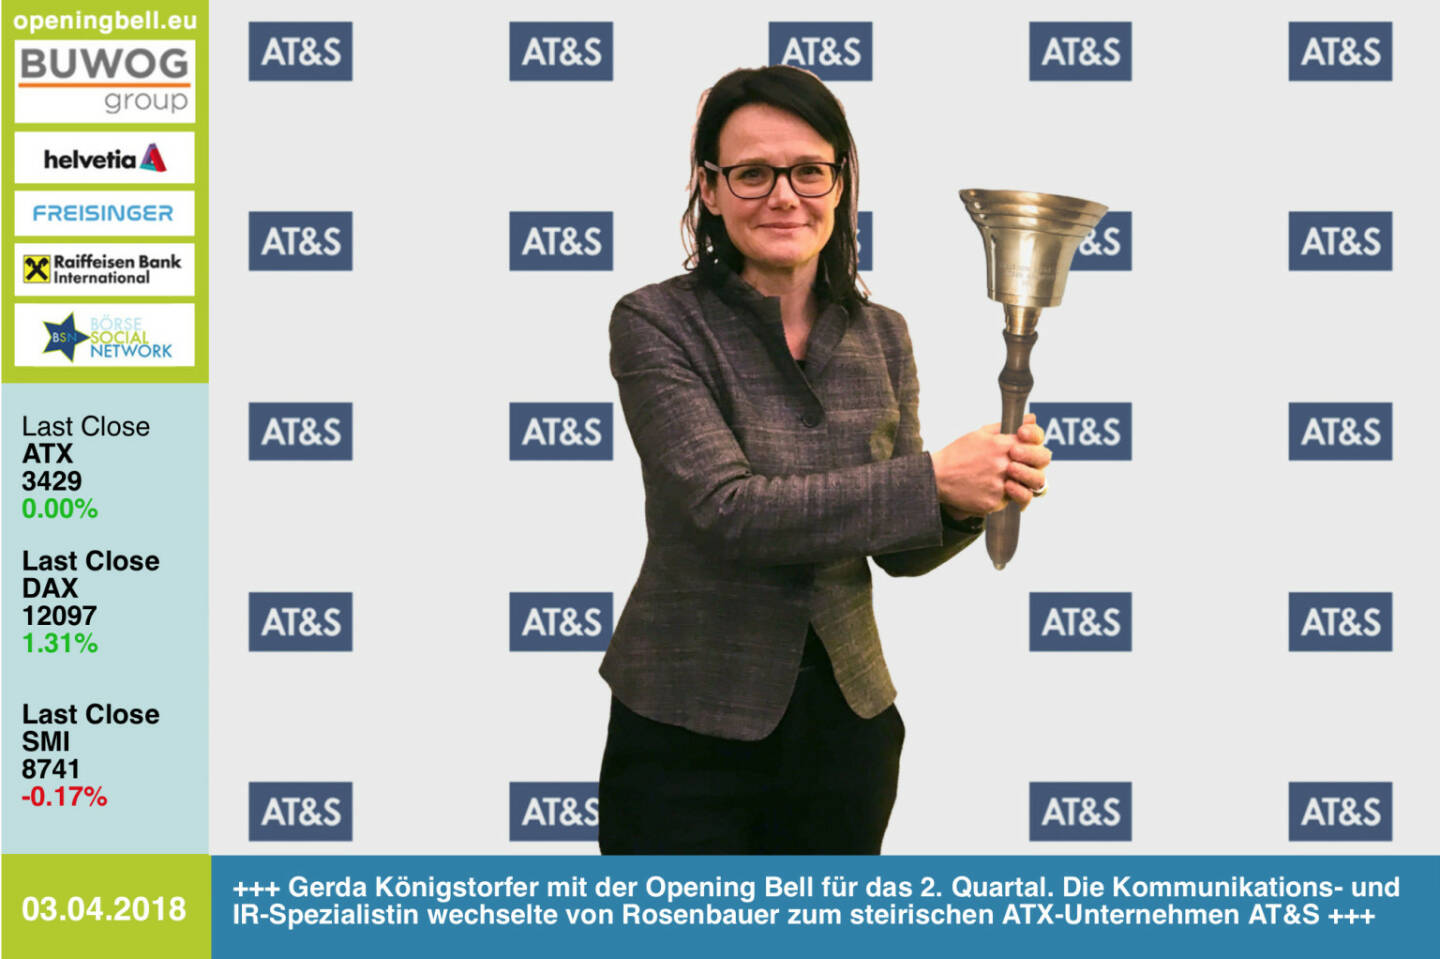 3.4.: Gerda Königstorfer läutet die Opening Bell für Dienstag und das 2. Quartal. Die Kommunikations- und IR-Spezialistin wechselte von Rosenbauer zum steirischen ATX-Unternehmen AT&S https://ats.net/de/  https://www.facebook.com/groups/GeldanlageNetwork/  #goboersewien